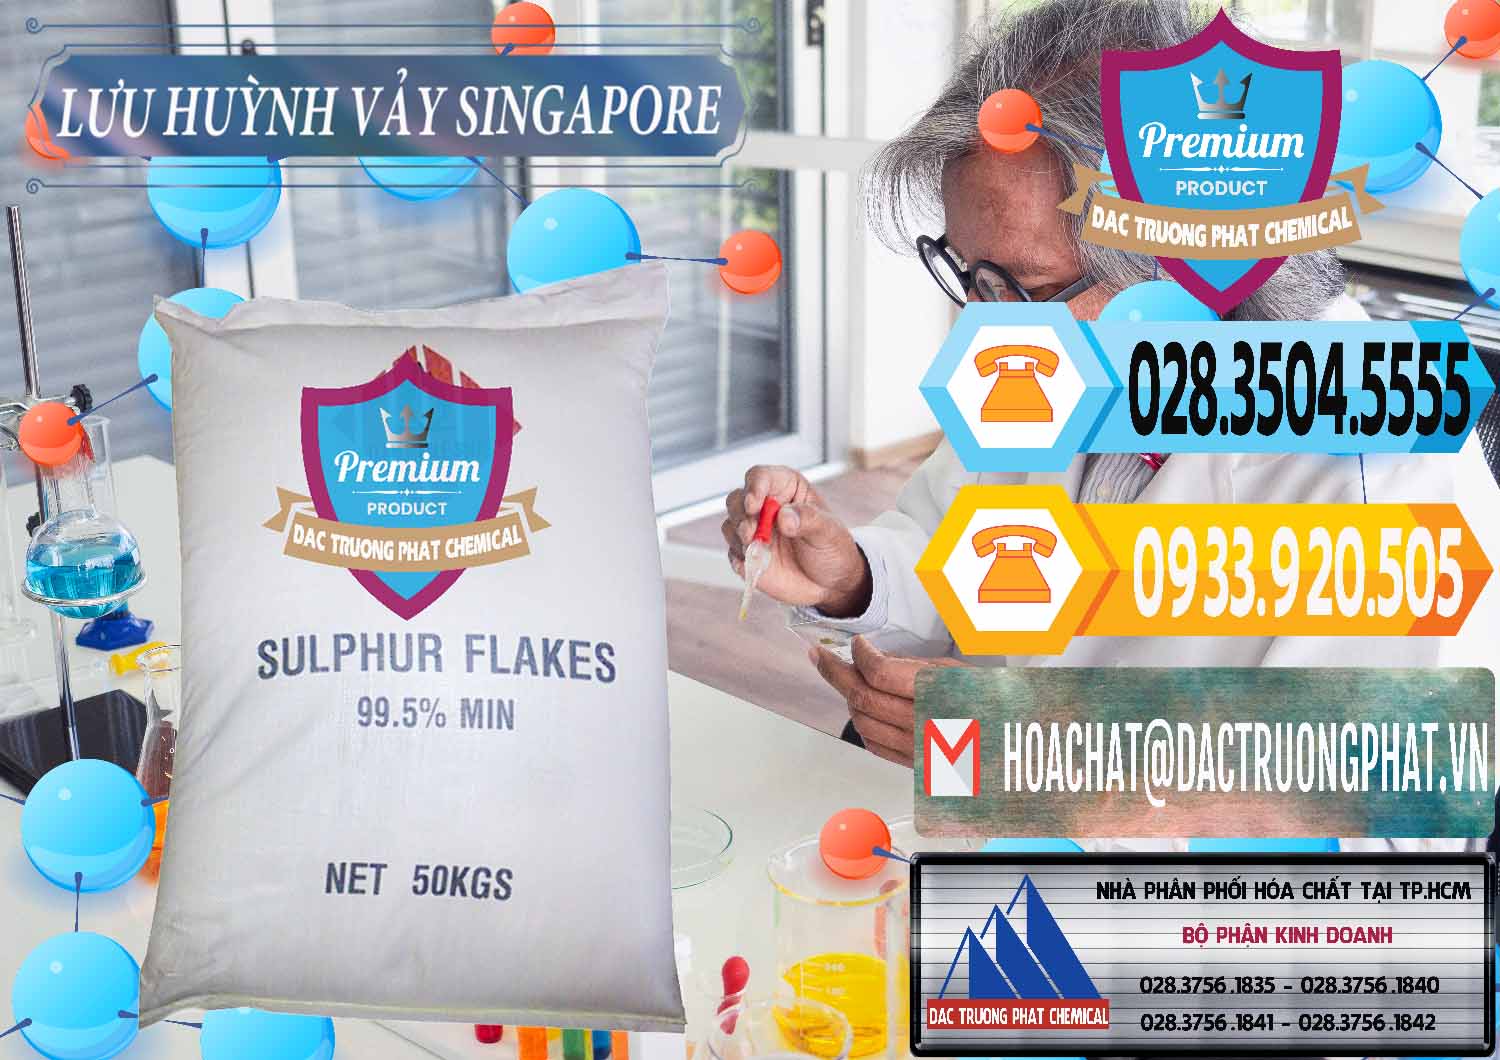 Cty chuyên bán - phân phối Lưu huỳnh Vảy - Sulfur Flakes Singapore - 0346 - Đơn vị cung cấp và nhập khẩu hóa chất tại TP.HCM - hoachattayrua.net